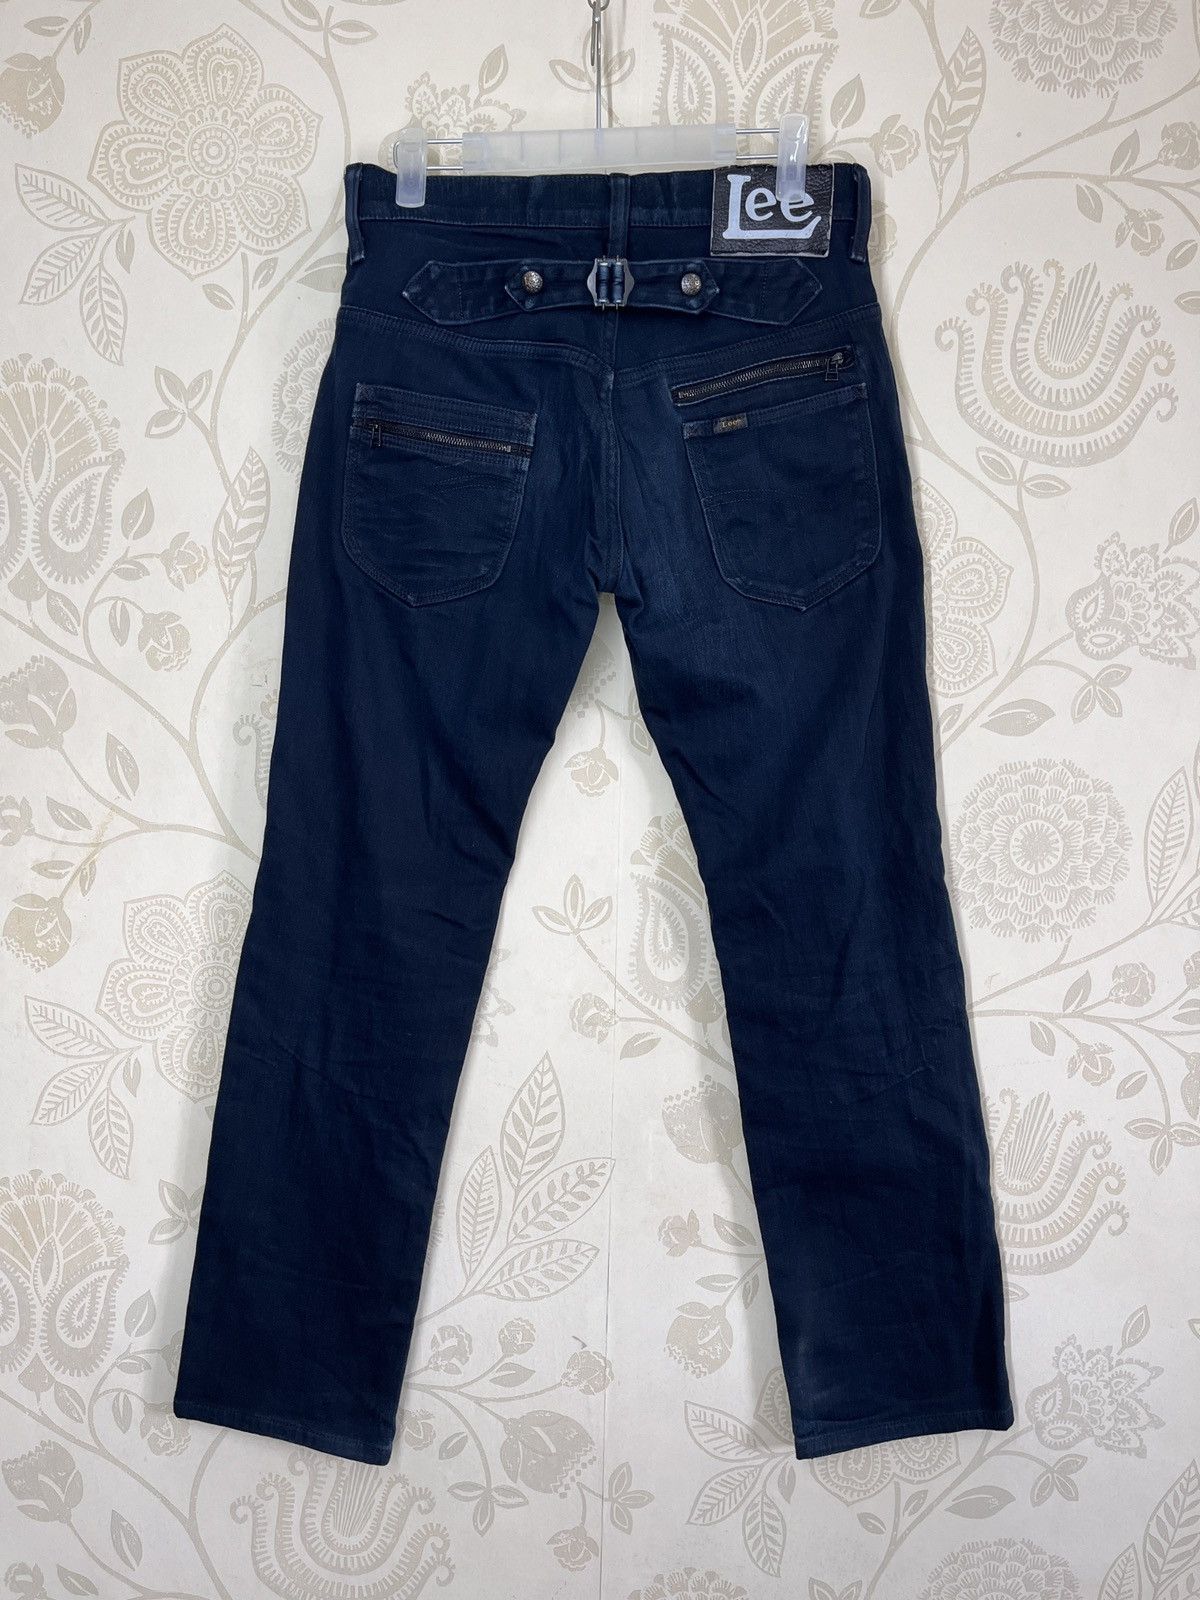 Multipocket Lee Rider Denim Jeans Vintage - 2